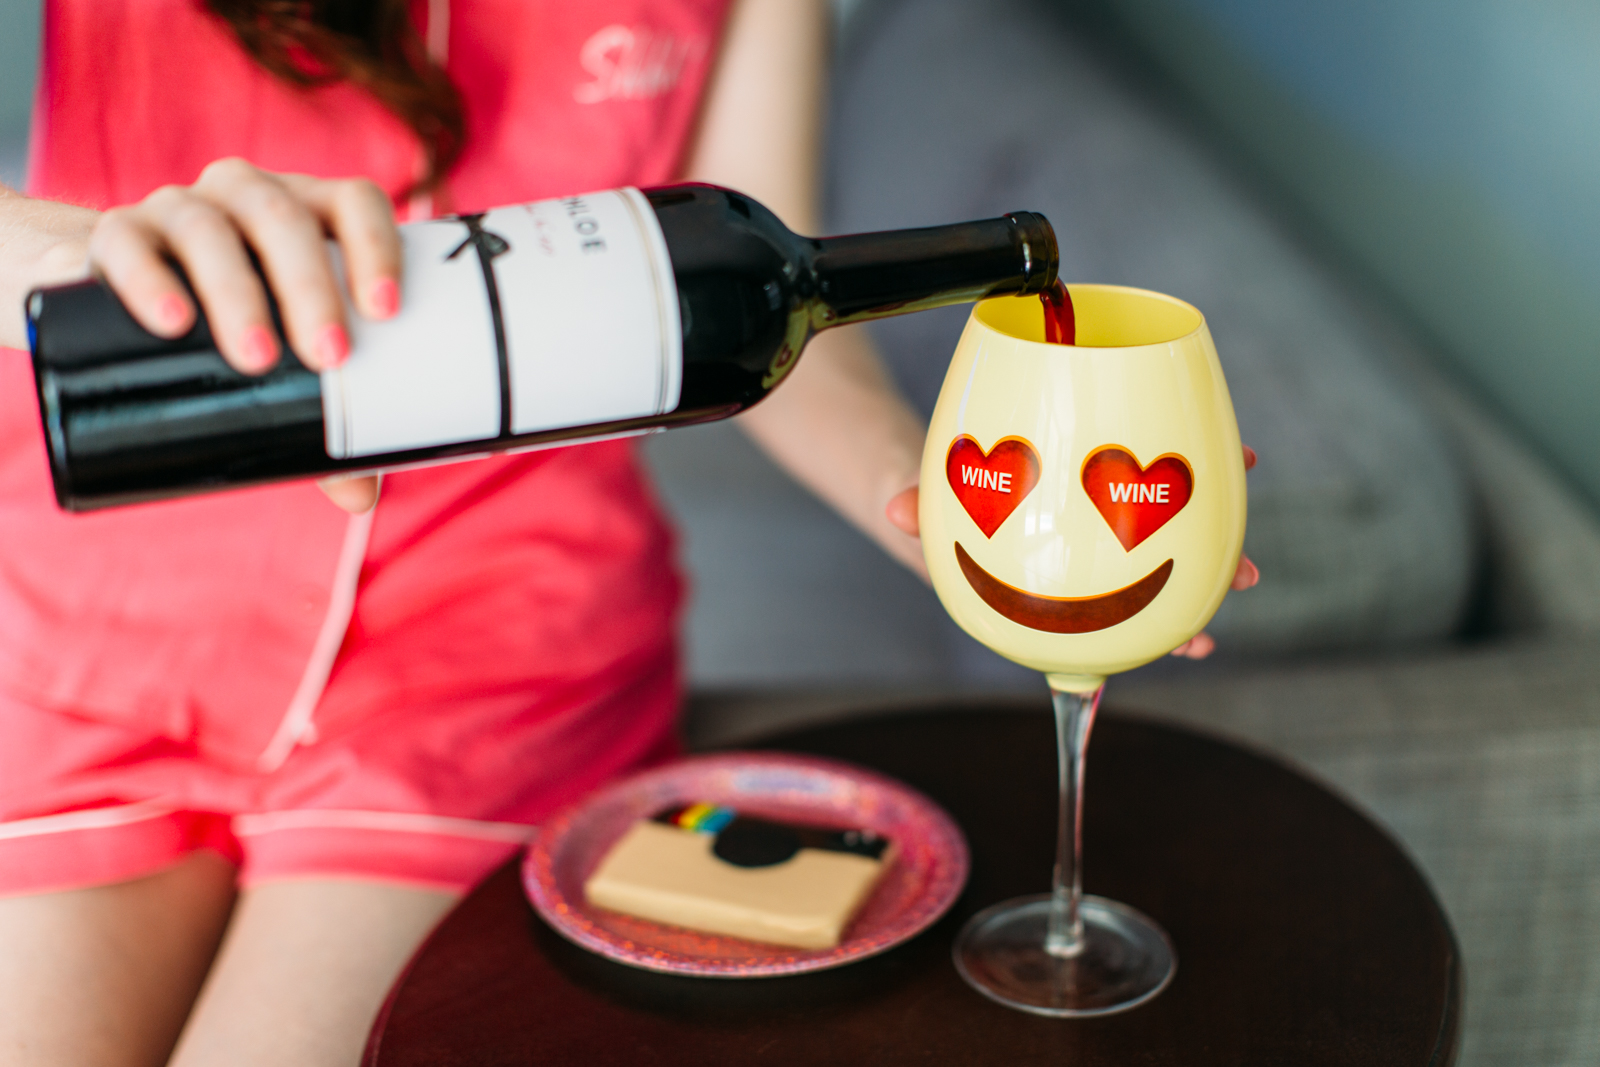 Heart eye emoji wine glass